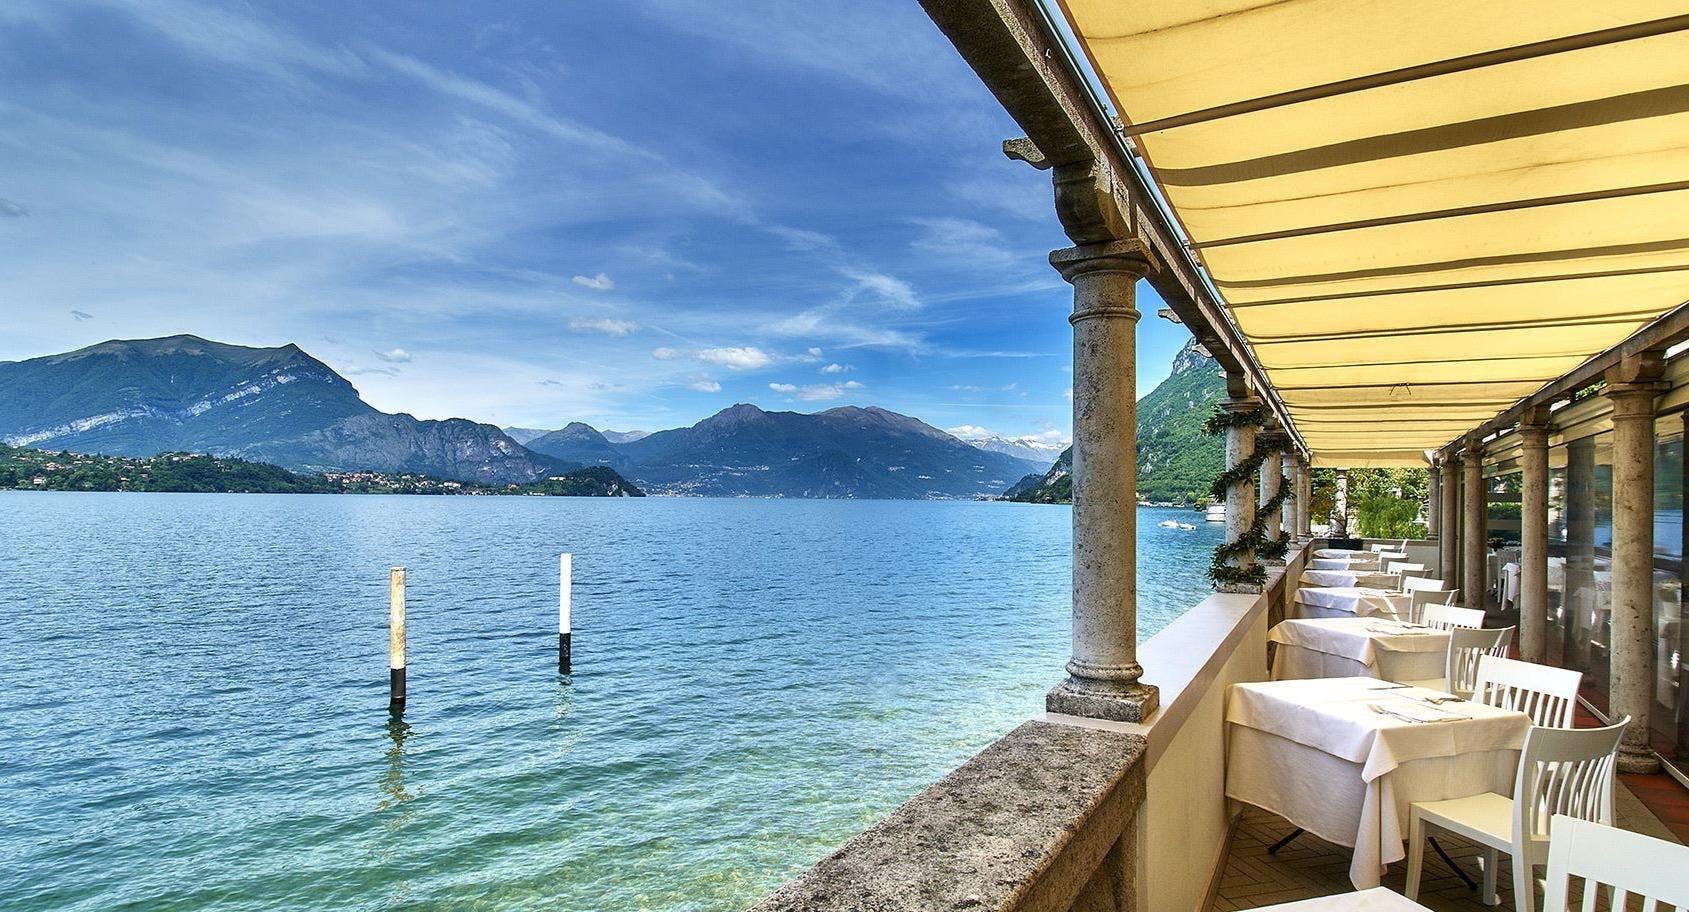 Photo of restaurant Sottovento Lago di Como in Lierna, Lecco